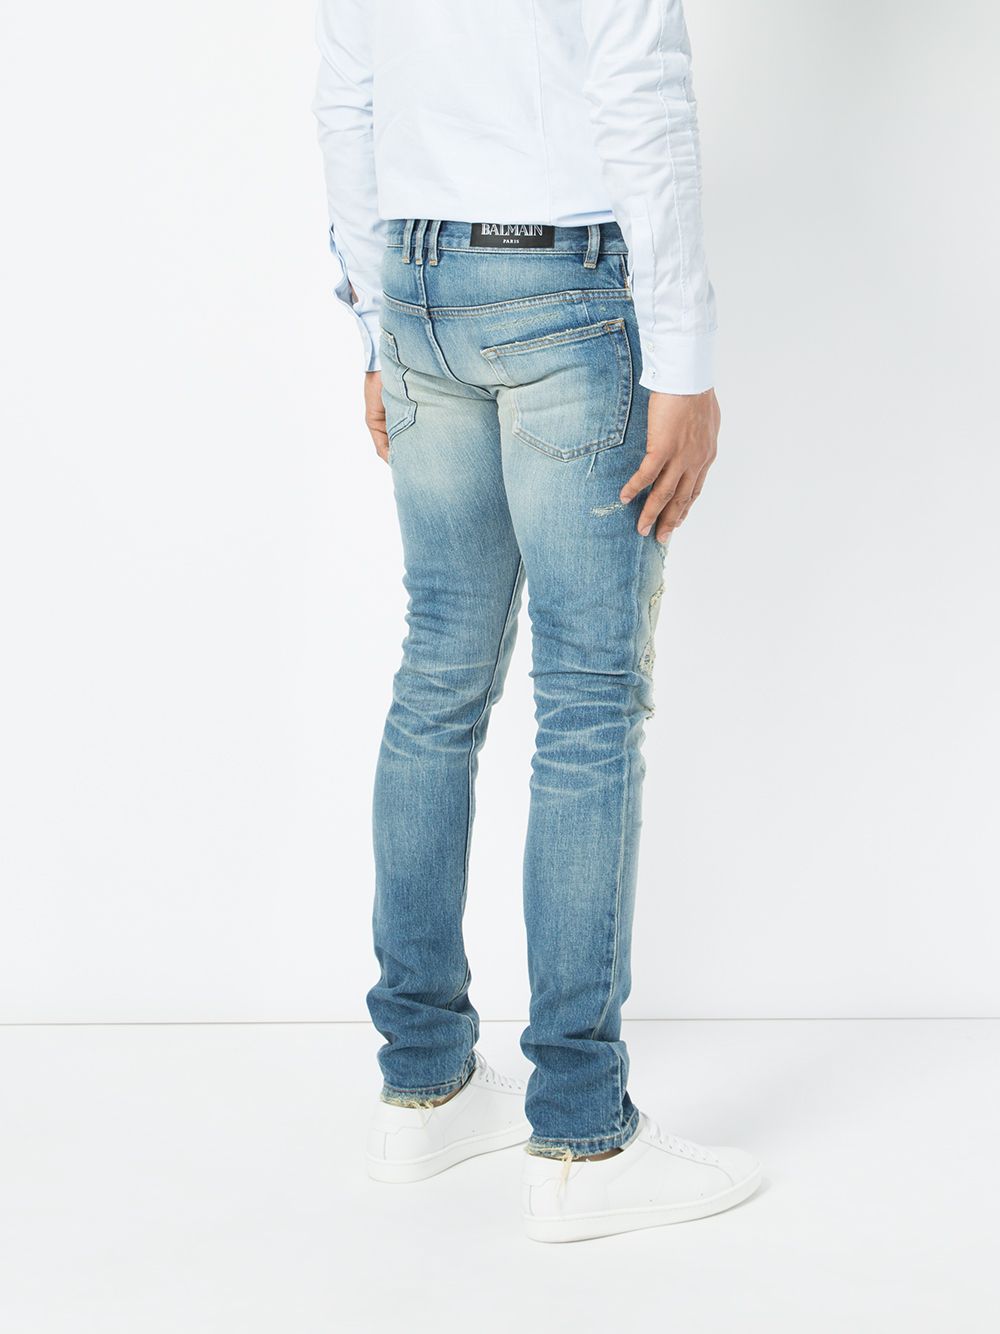 фото Balmain джинсы кроя скинни с потертой отделкой